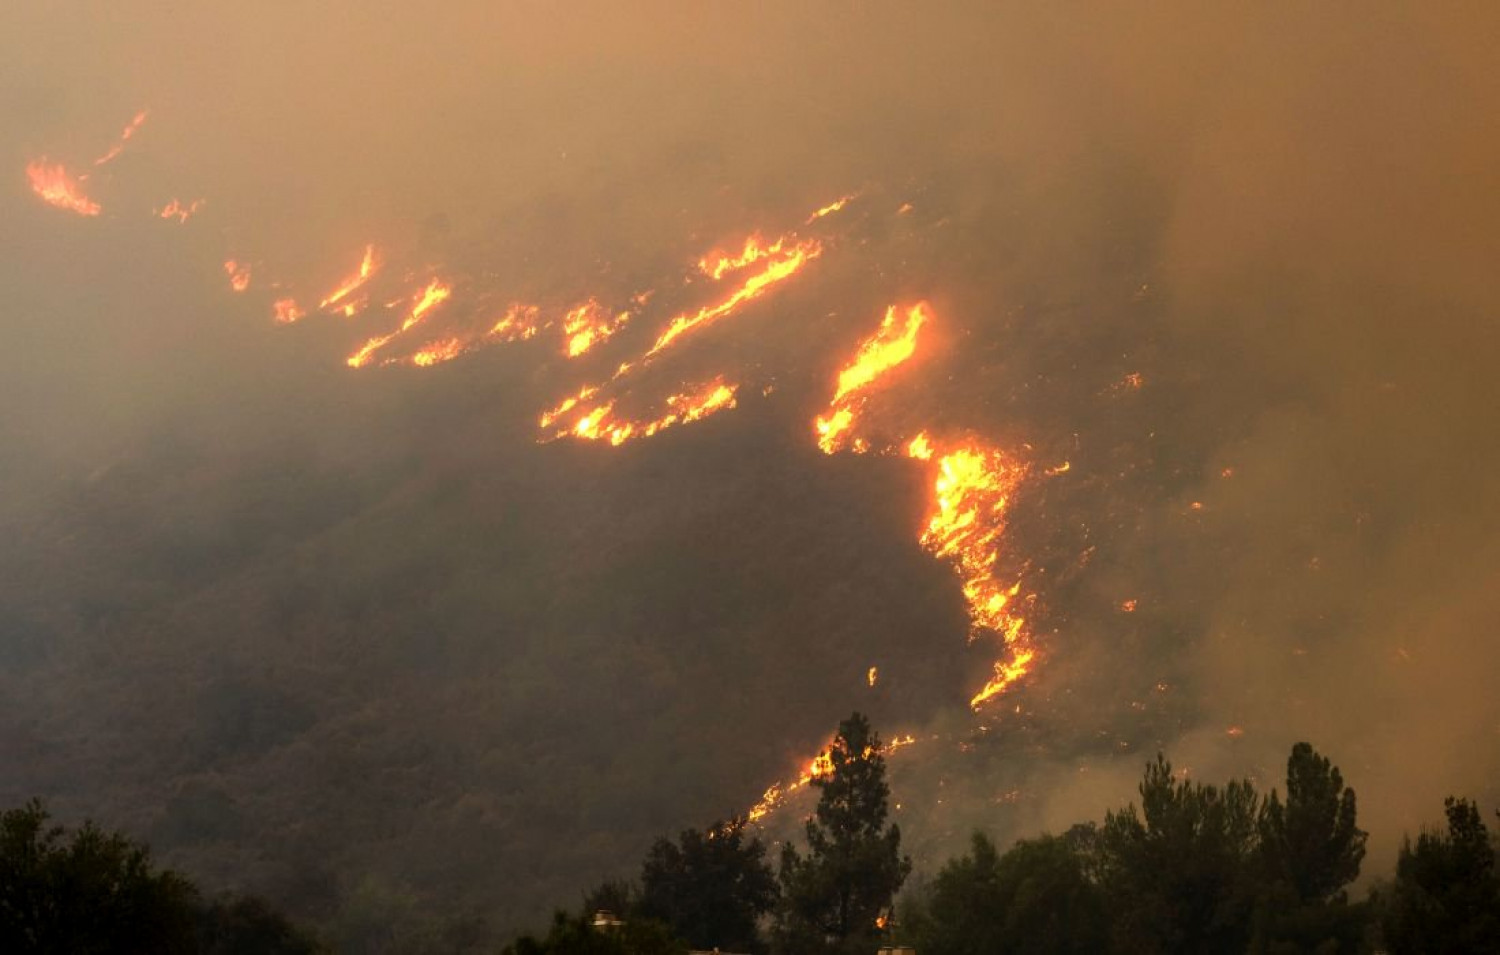 Πυρκαγιά στην Εύβοια: Αναζωπυρώσεις και έντονος καπνός στην ατμόσφαιρα των γύρω περιοχών!